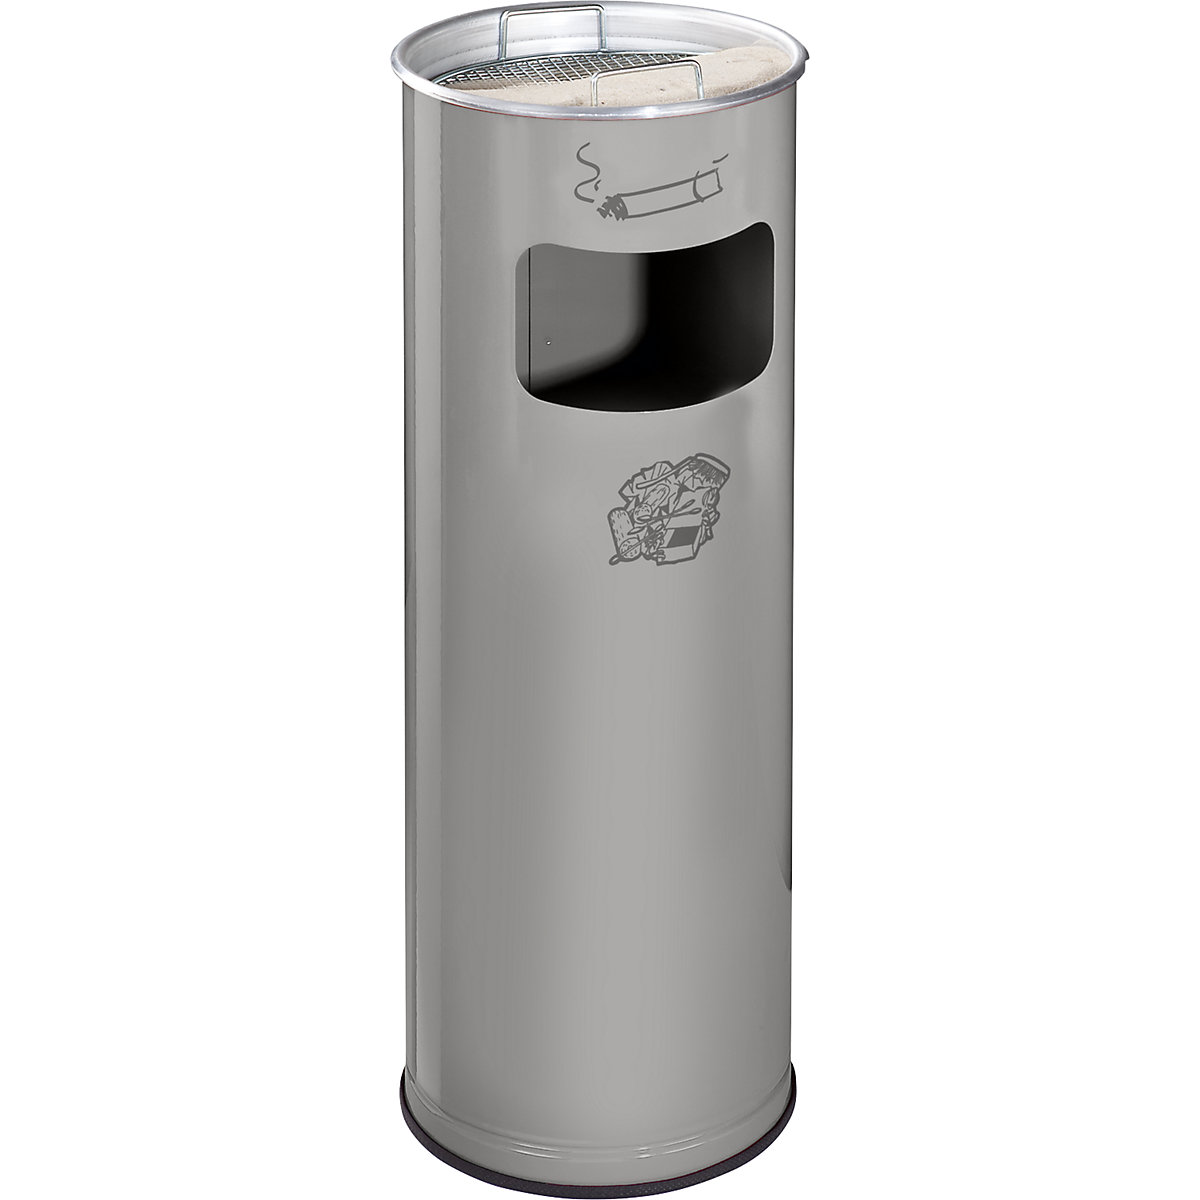 VAR – Combiné cendrier-poubelle, capacité 17 l, h x Ø 660 x 230 mm, tôle d'acier, argent